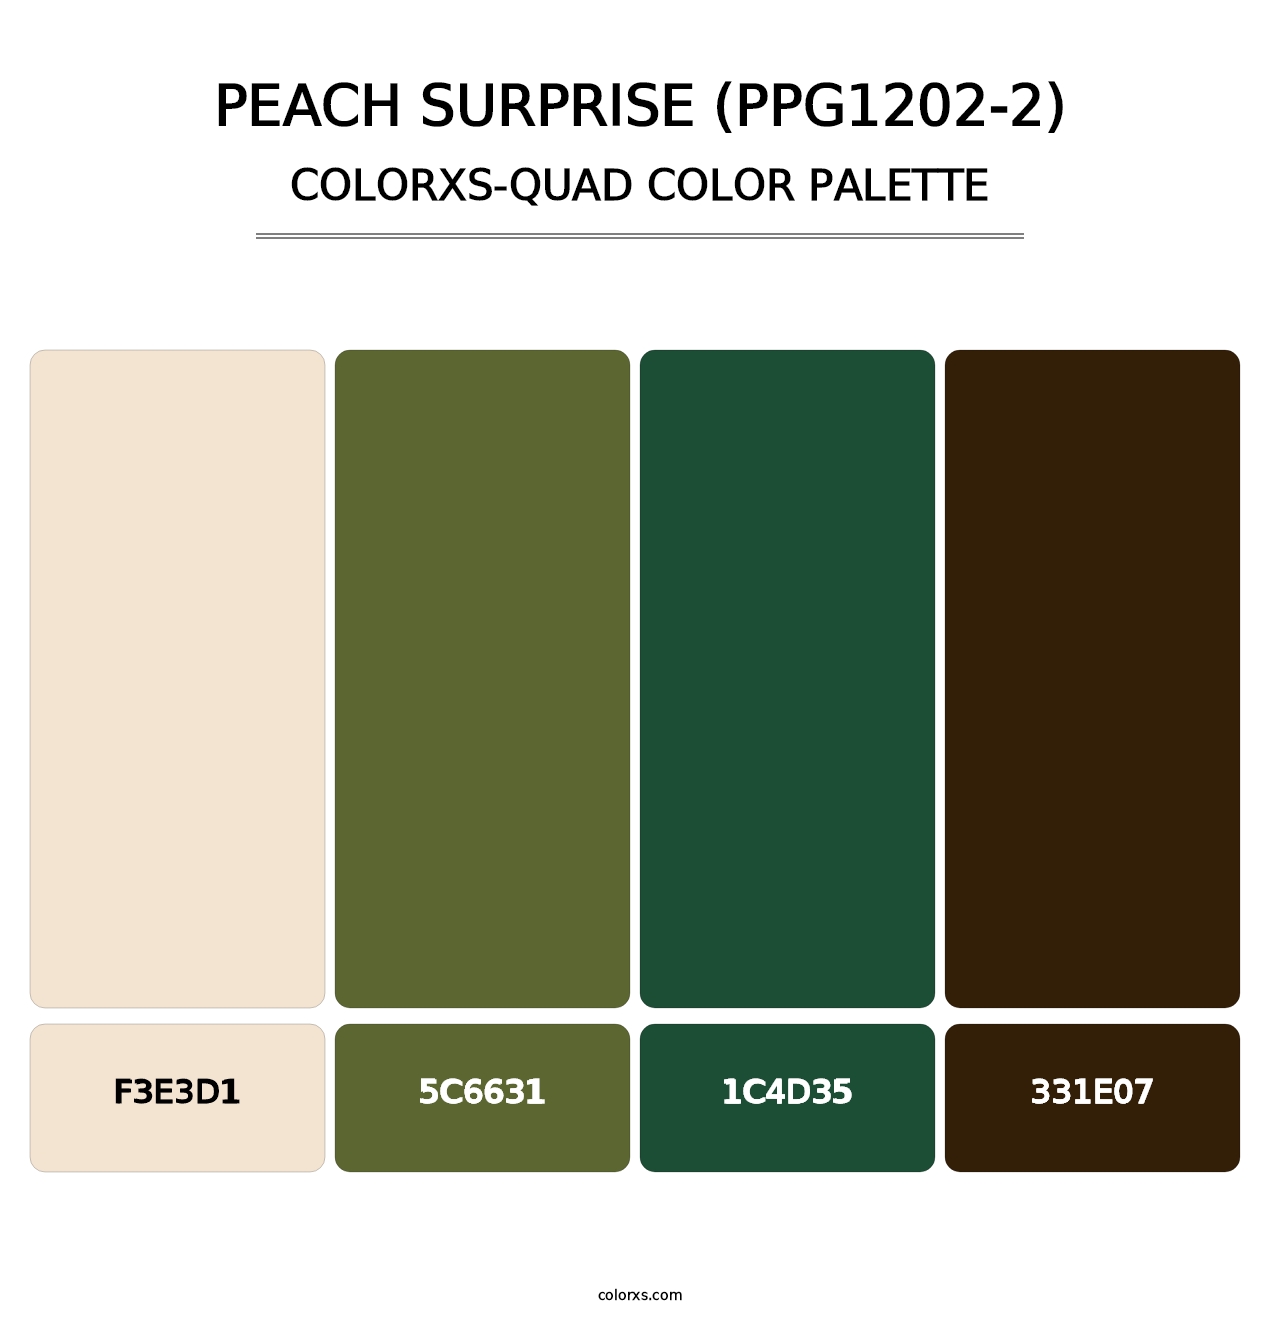 Peach Surprise (PPG1202-2) - Colorxs Quad Palette